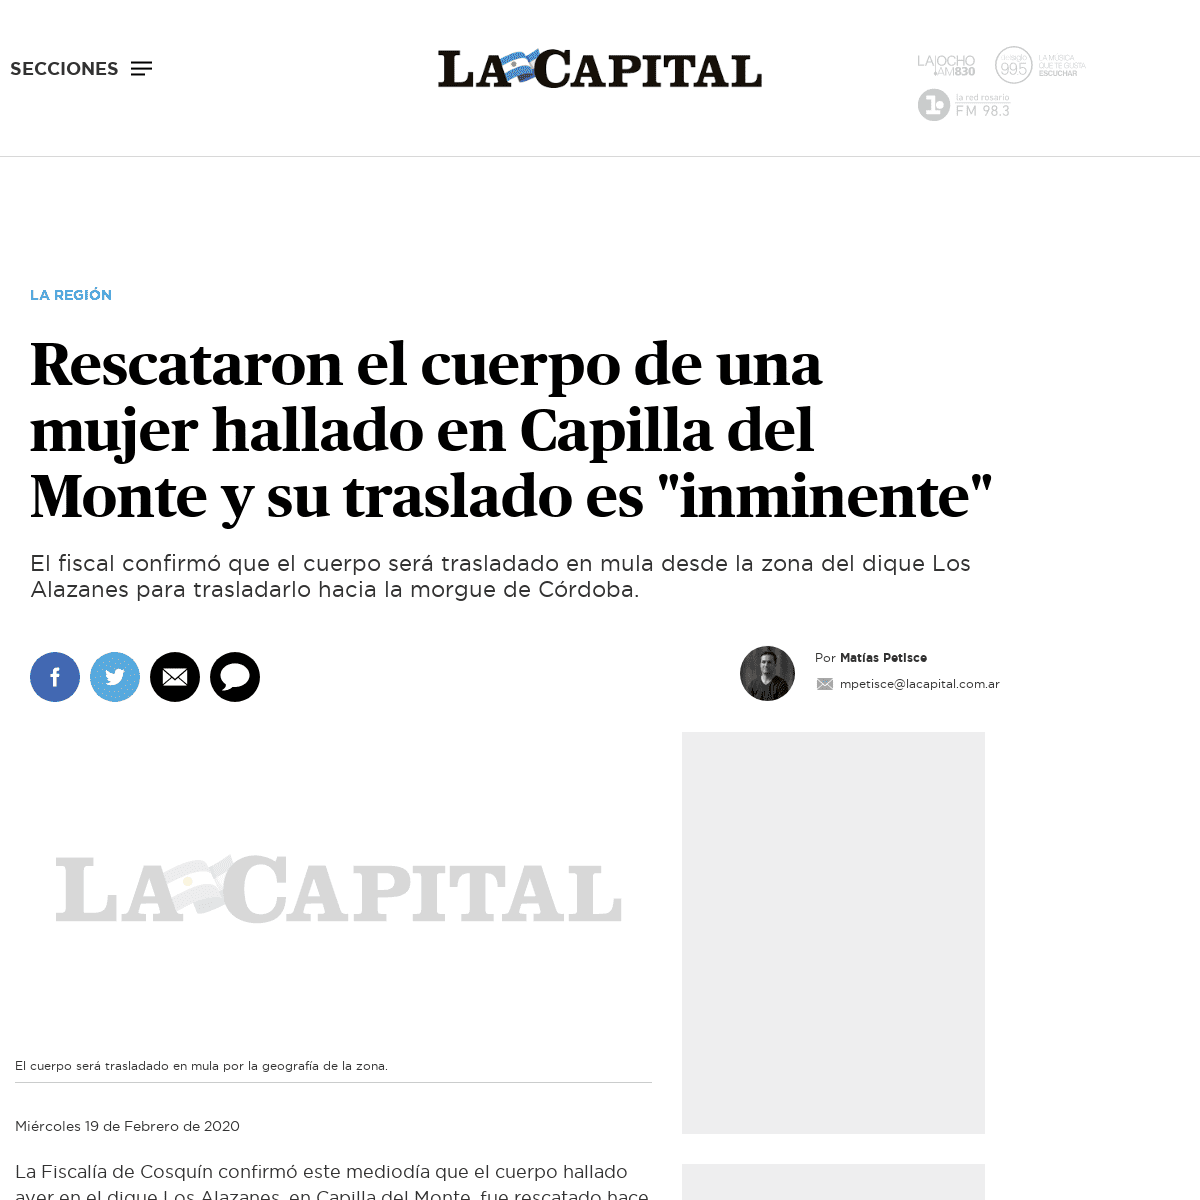 A complete backup of www.lacapital.com.ar/la-region/rescataron-el-cuerpo-una-mujer-hallado-capilla-del-monte-y-su-traslado-es-in